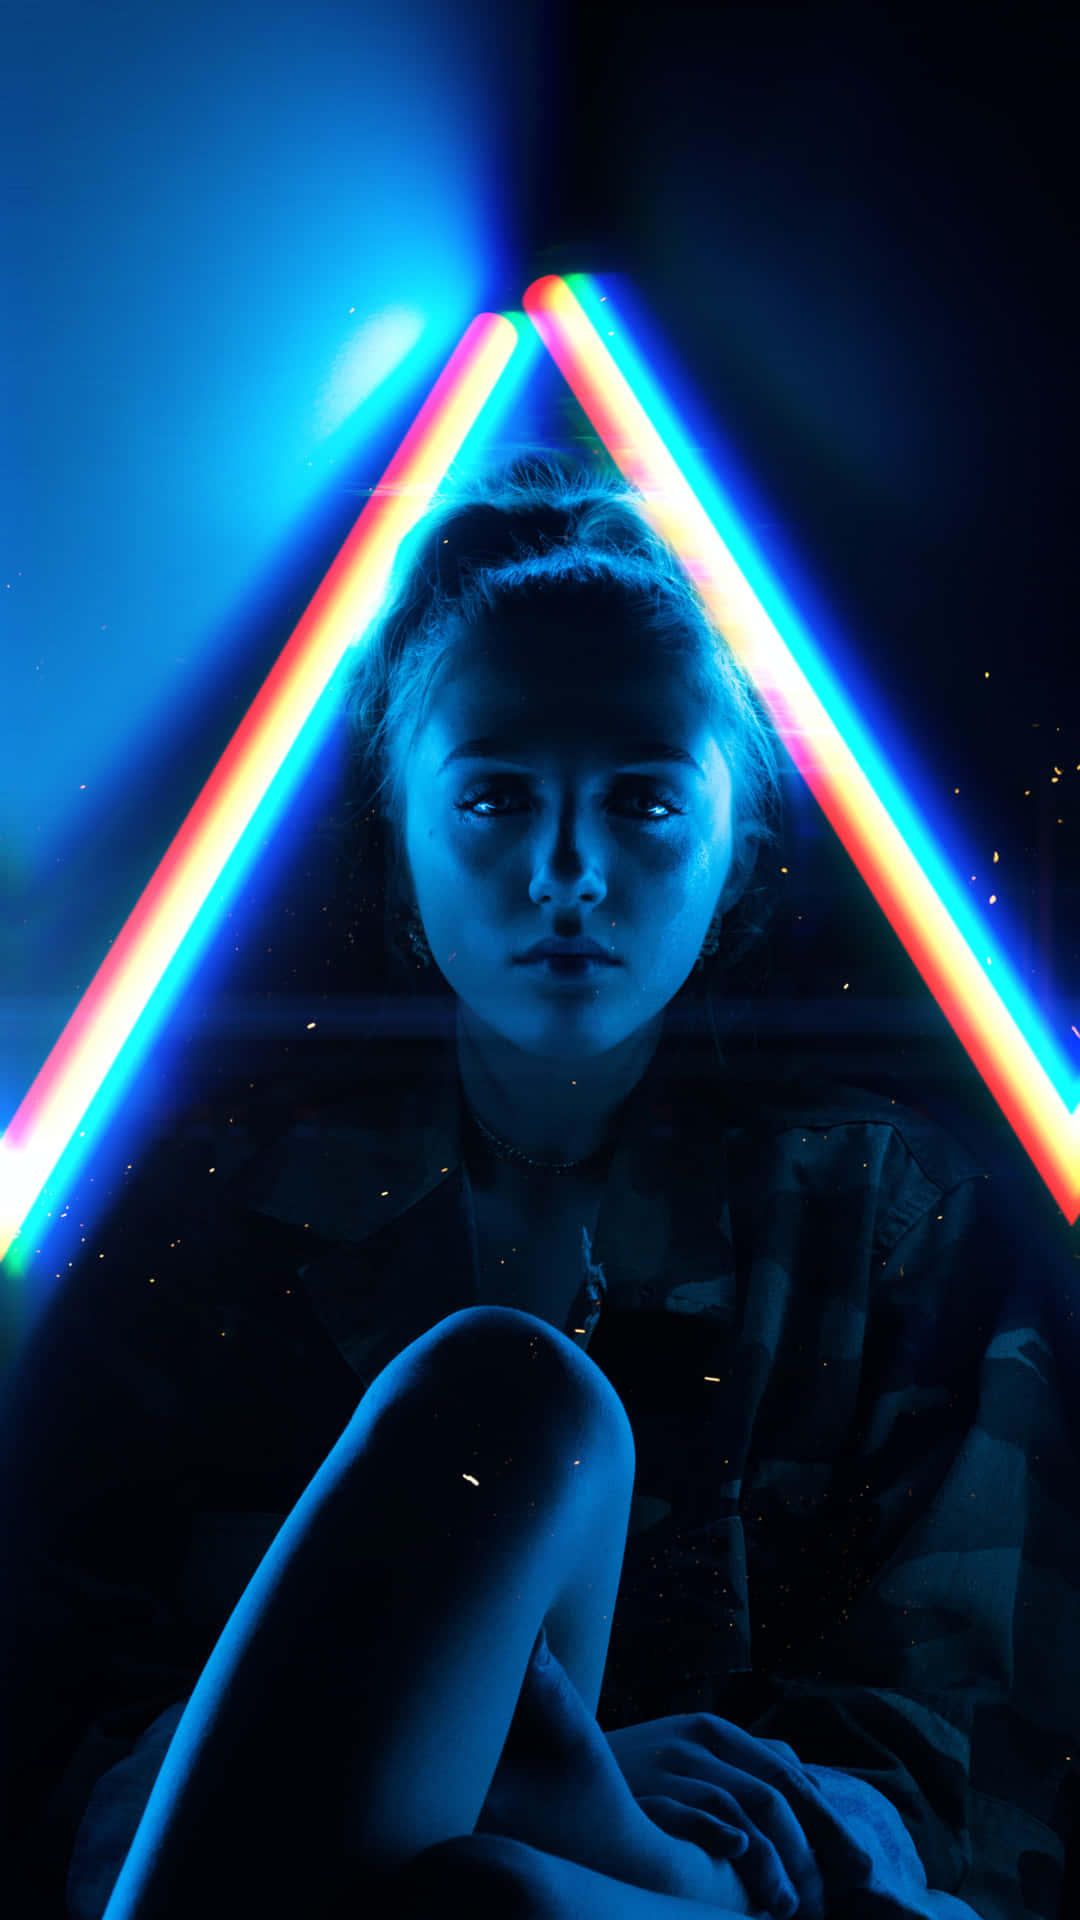 Neon Triangle Illuminated Woman